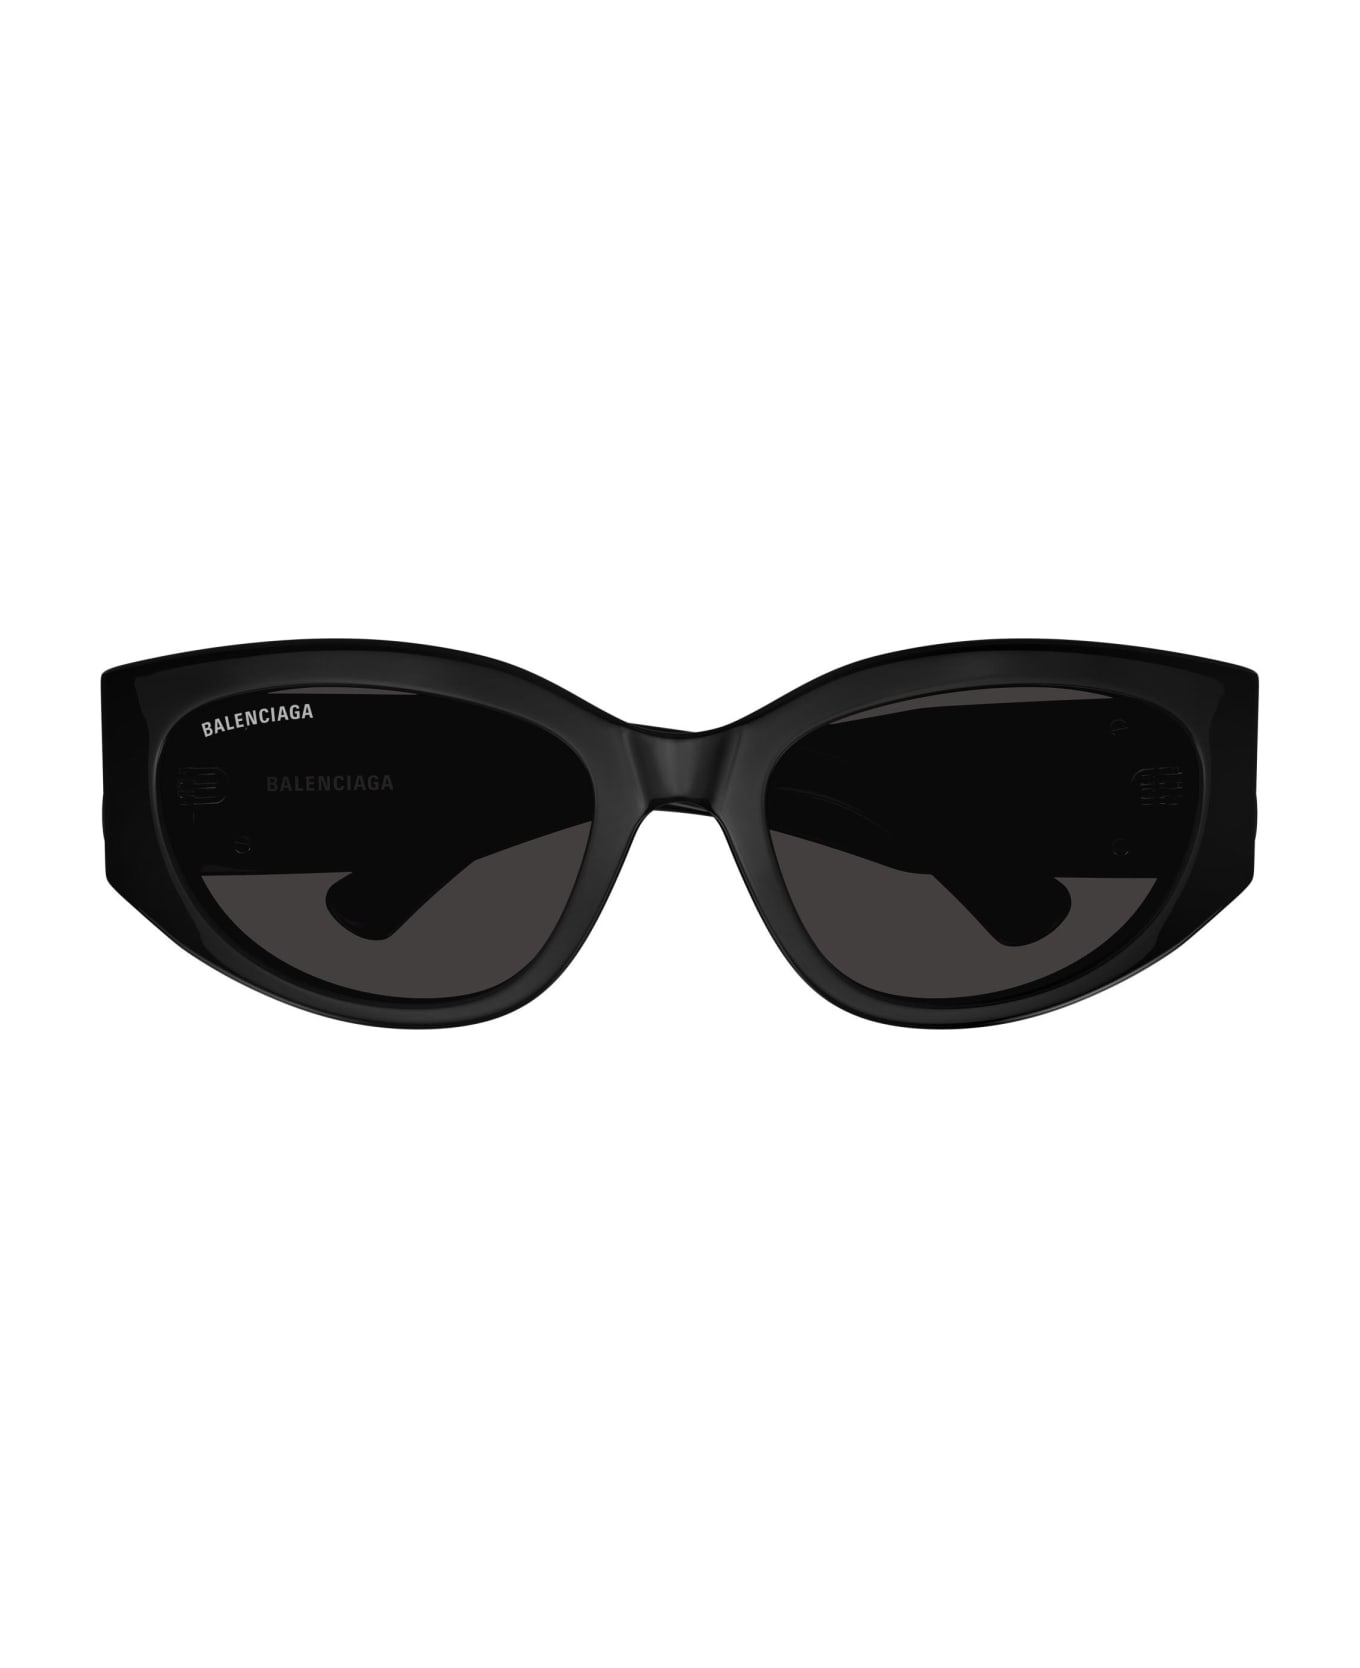 Balenciaga Eyewear Sunglasses - Nero/Grigio サングラス